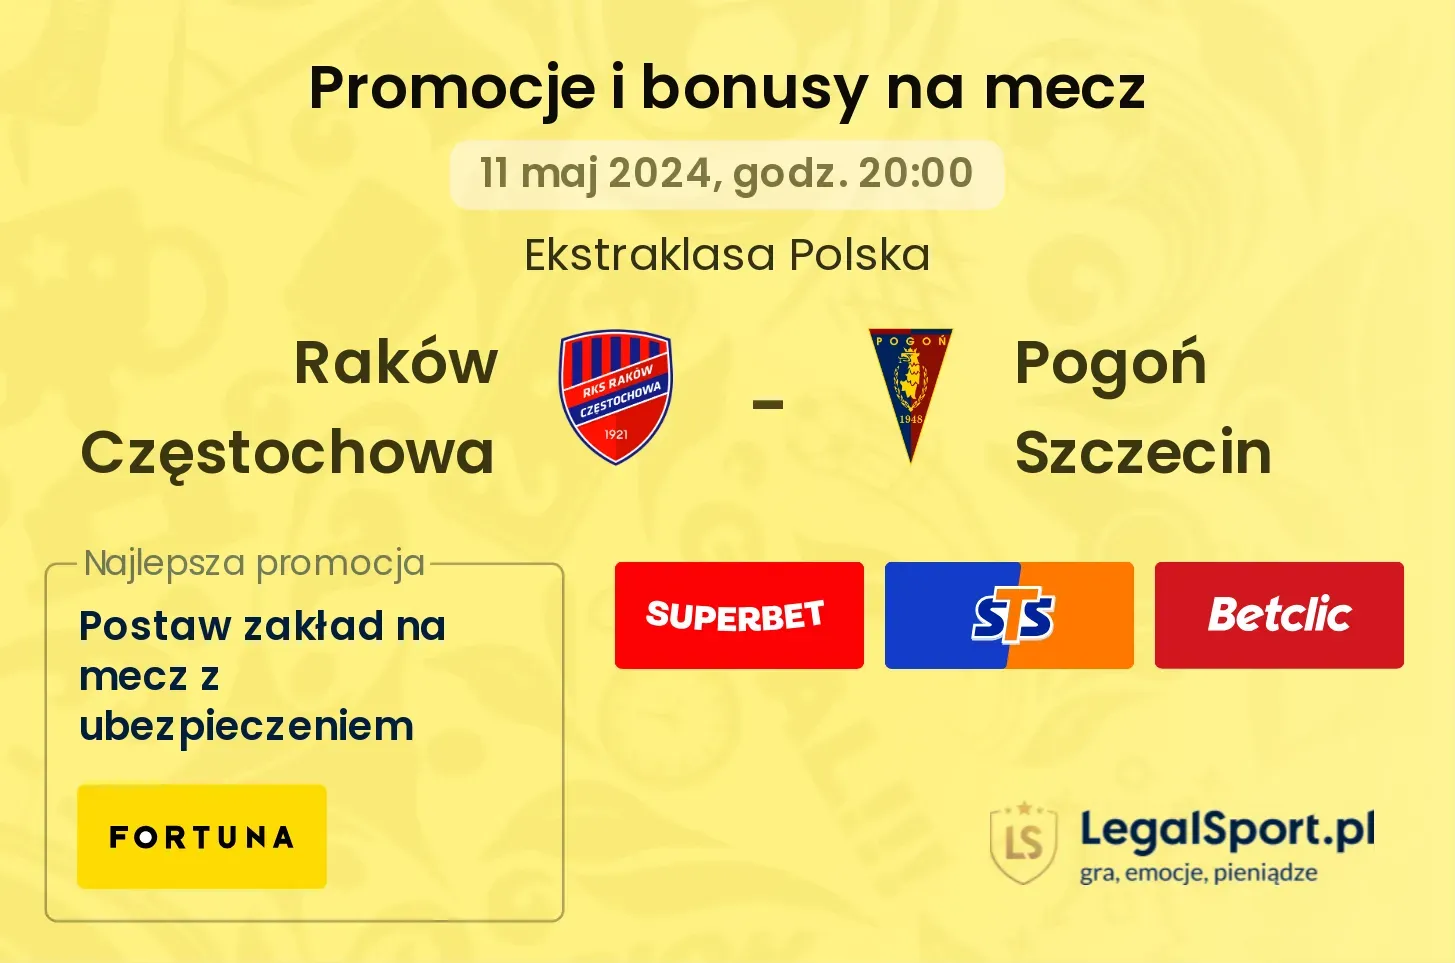 Raków Częstochowa - Pogoń Szczecin promocje bonusy na mecz